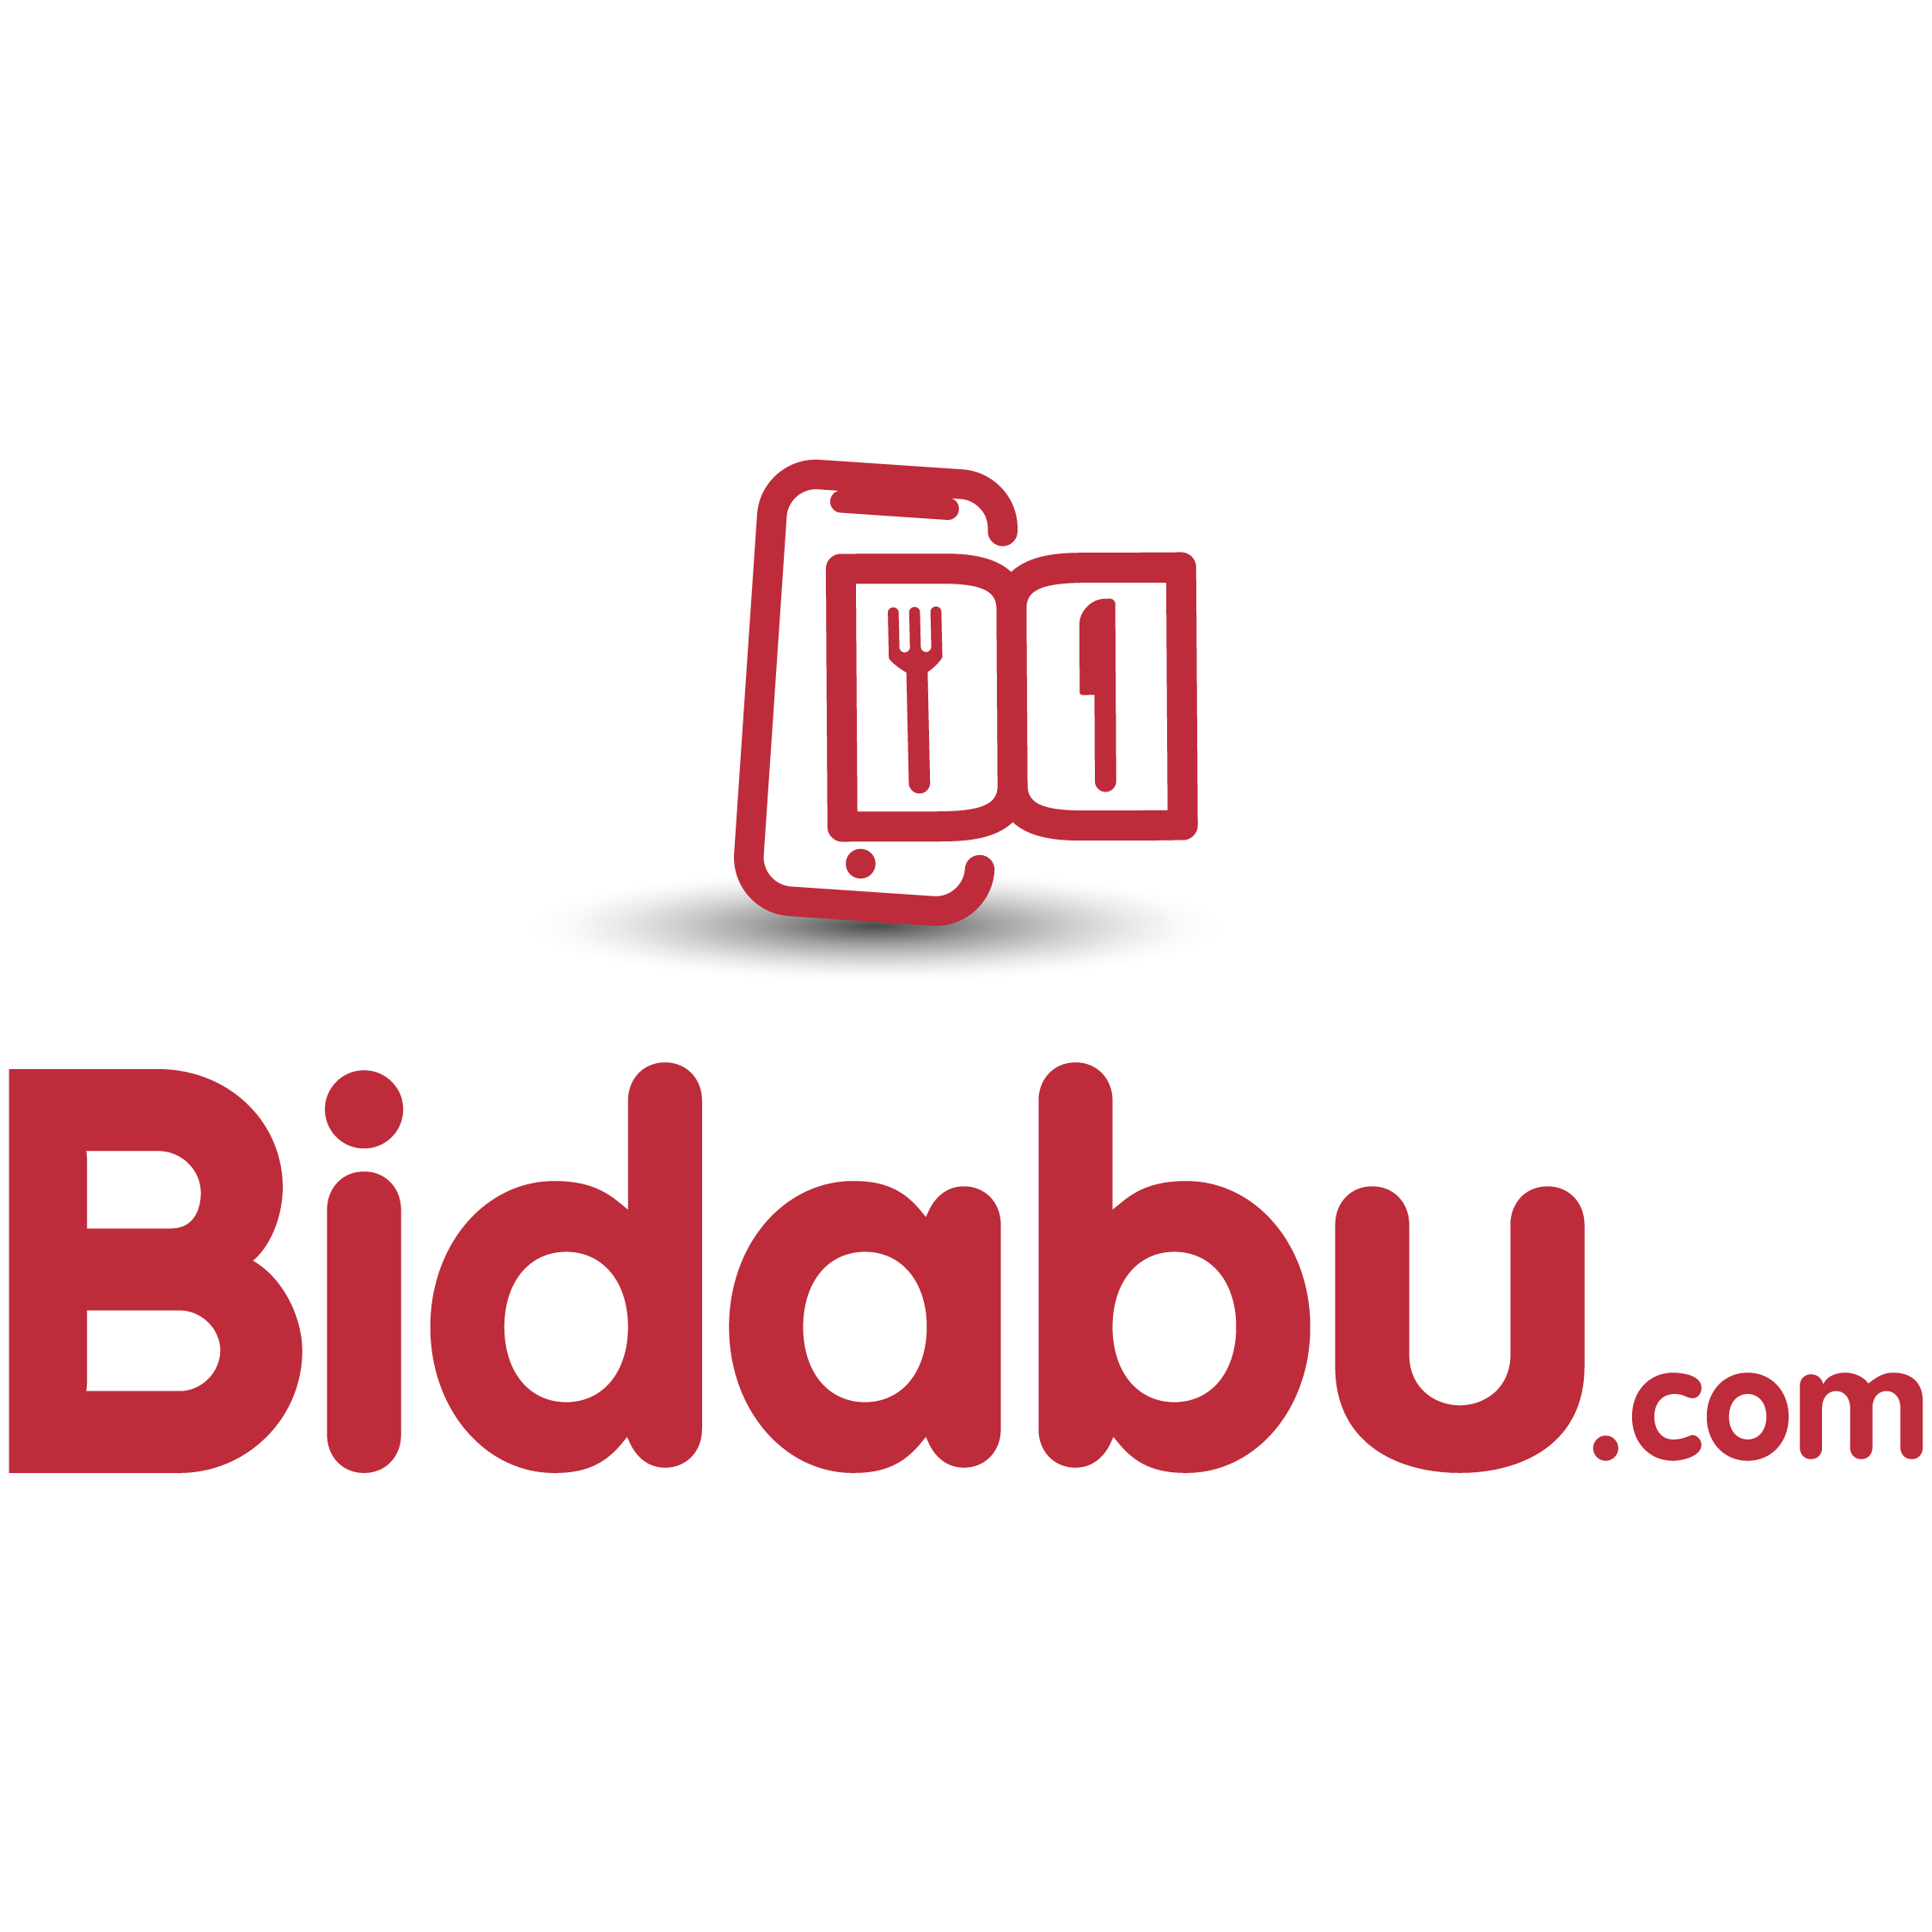 (c) Bidabu.com